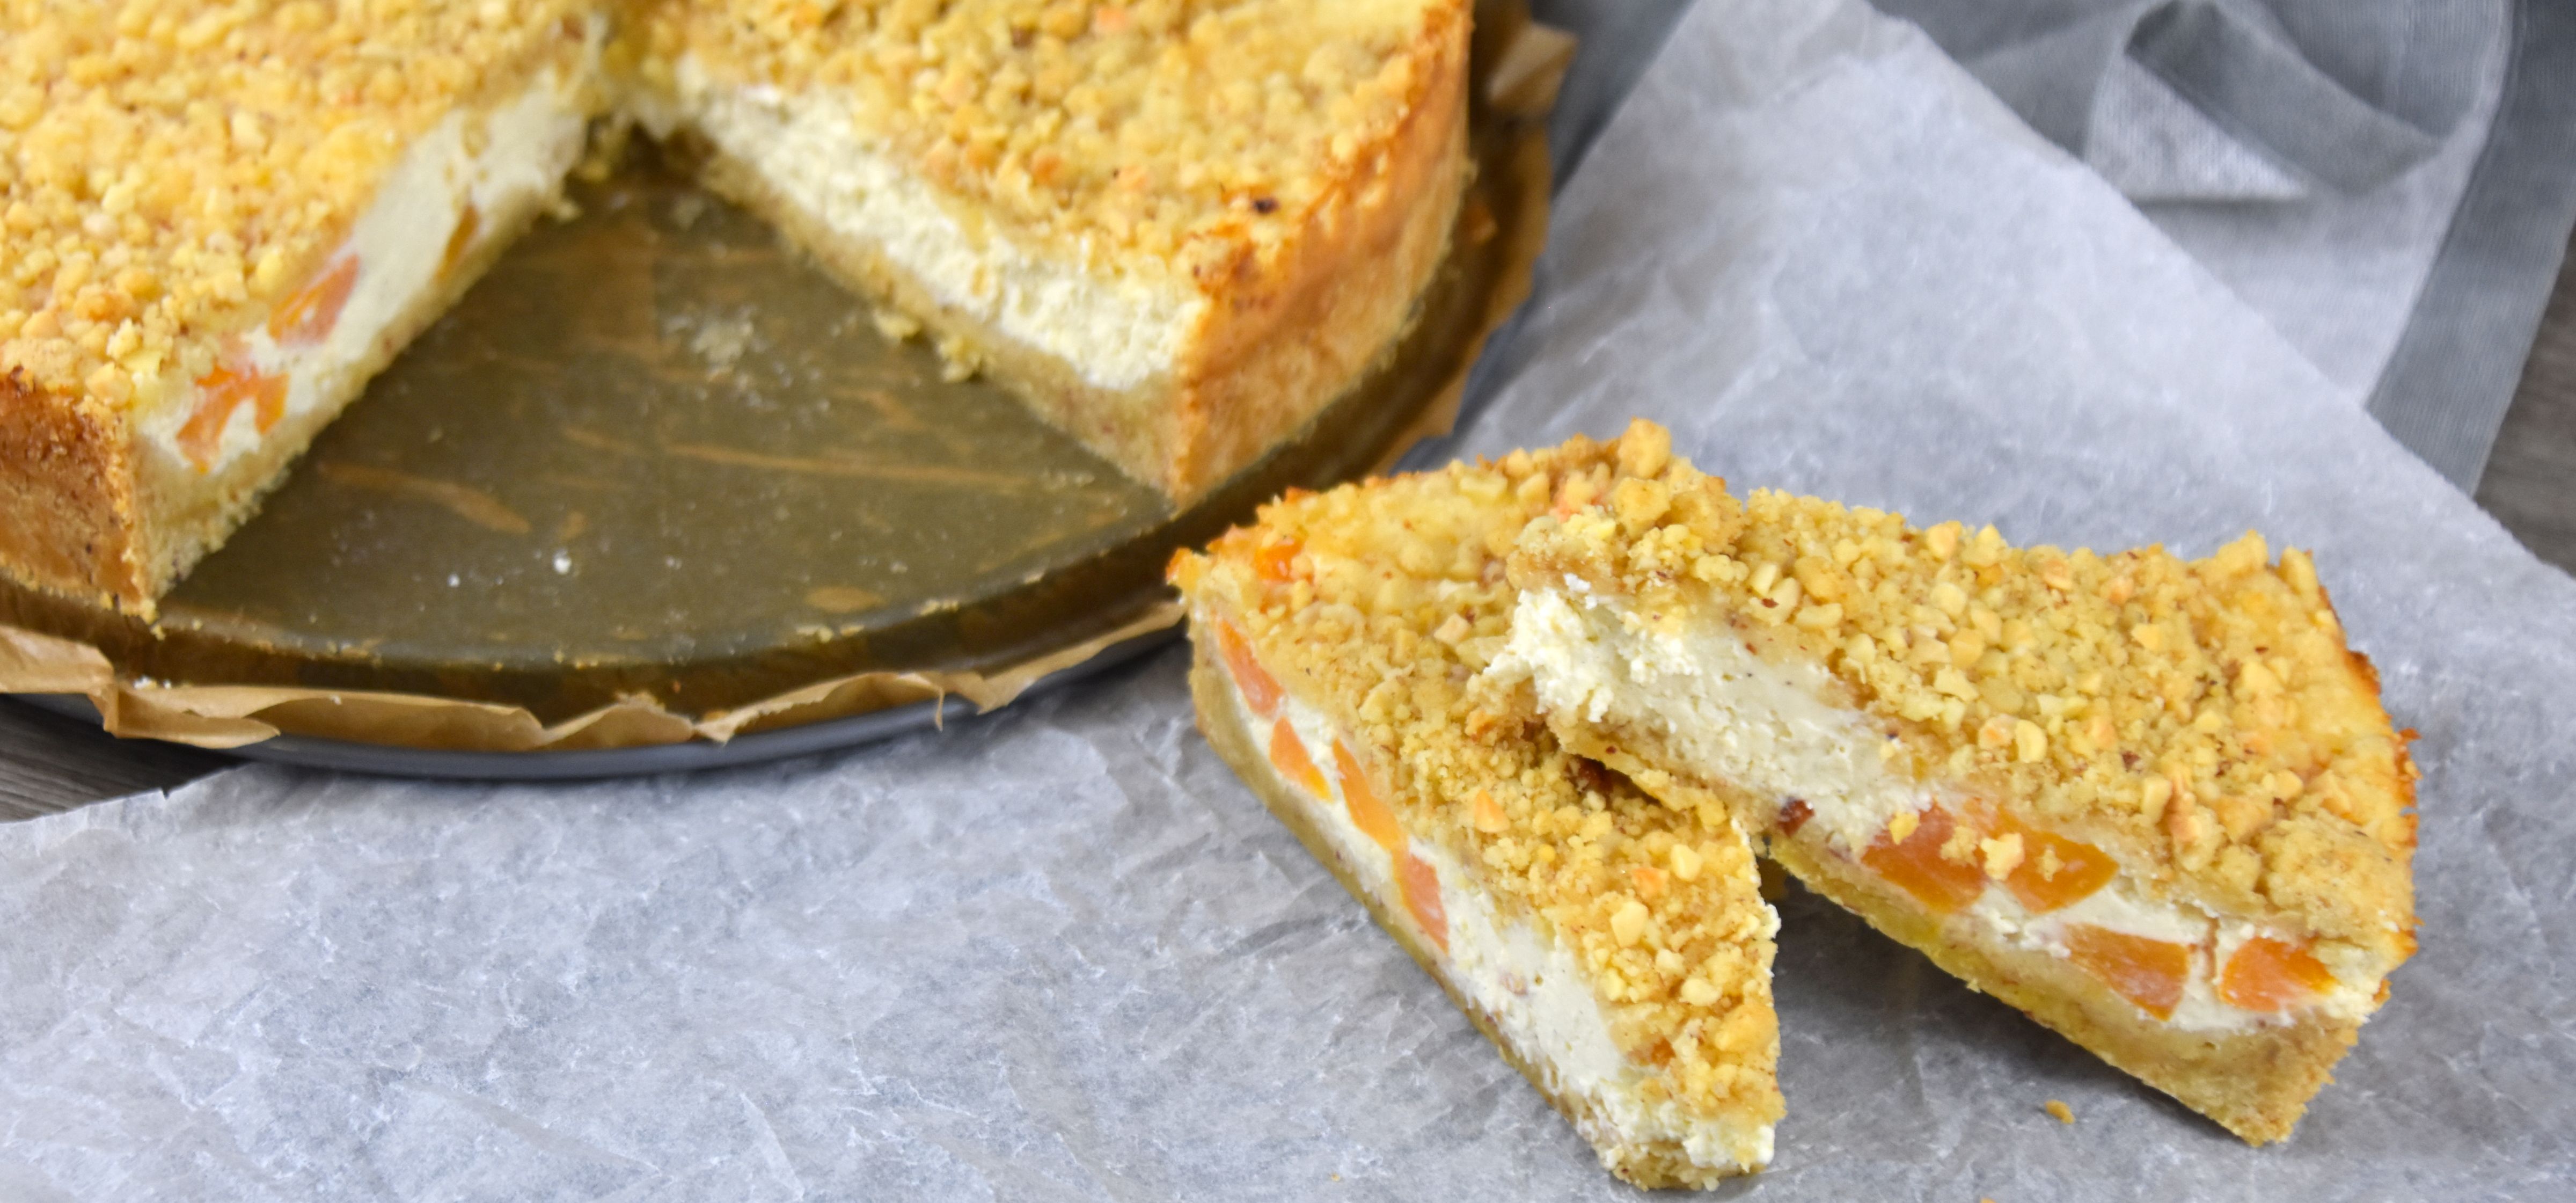 Pfirsich-Cheesecake mit Mandel-Knusperstreuseln